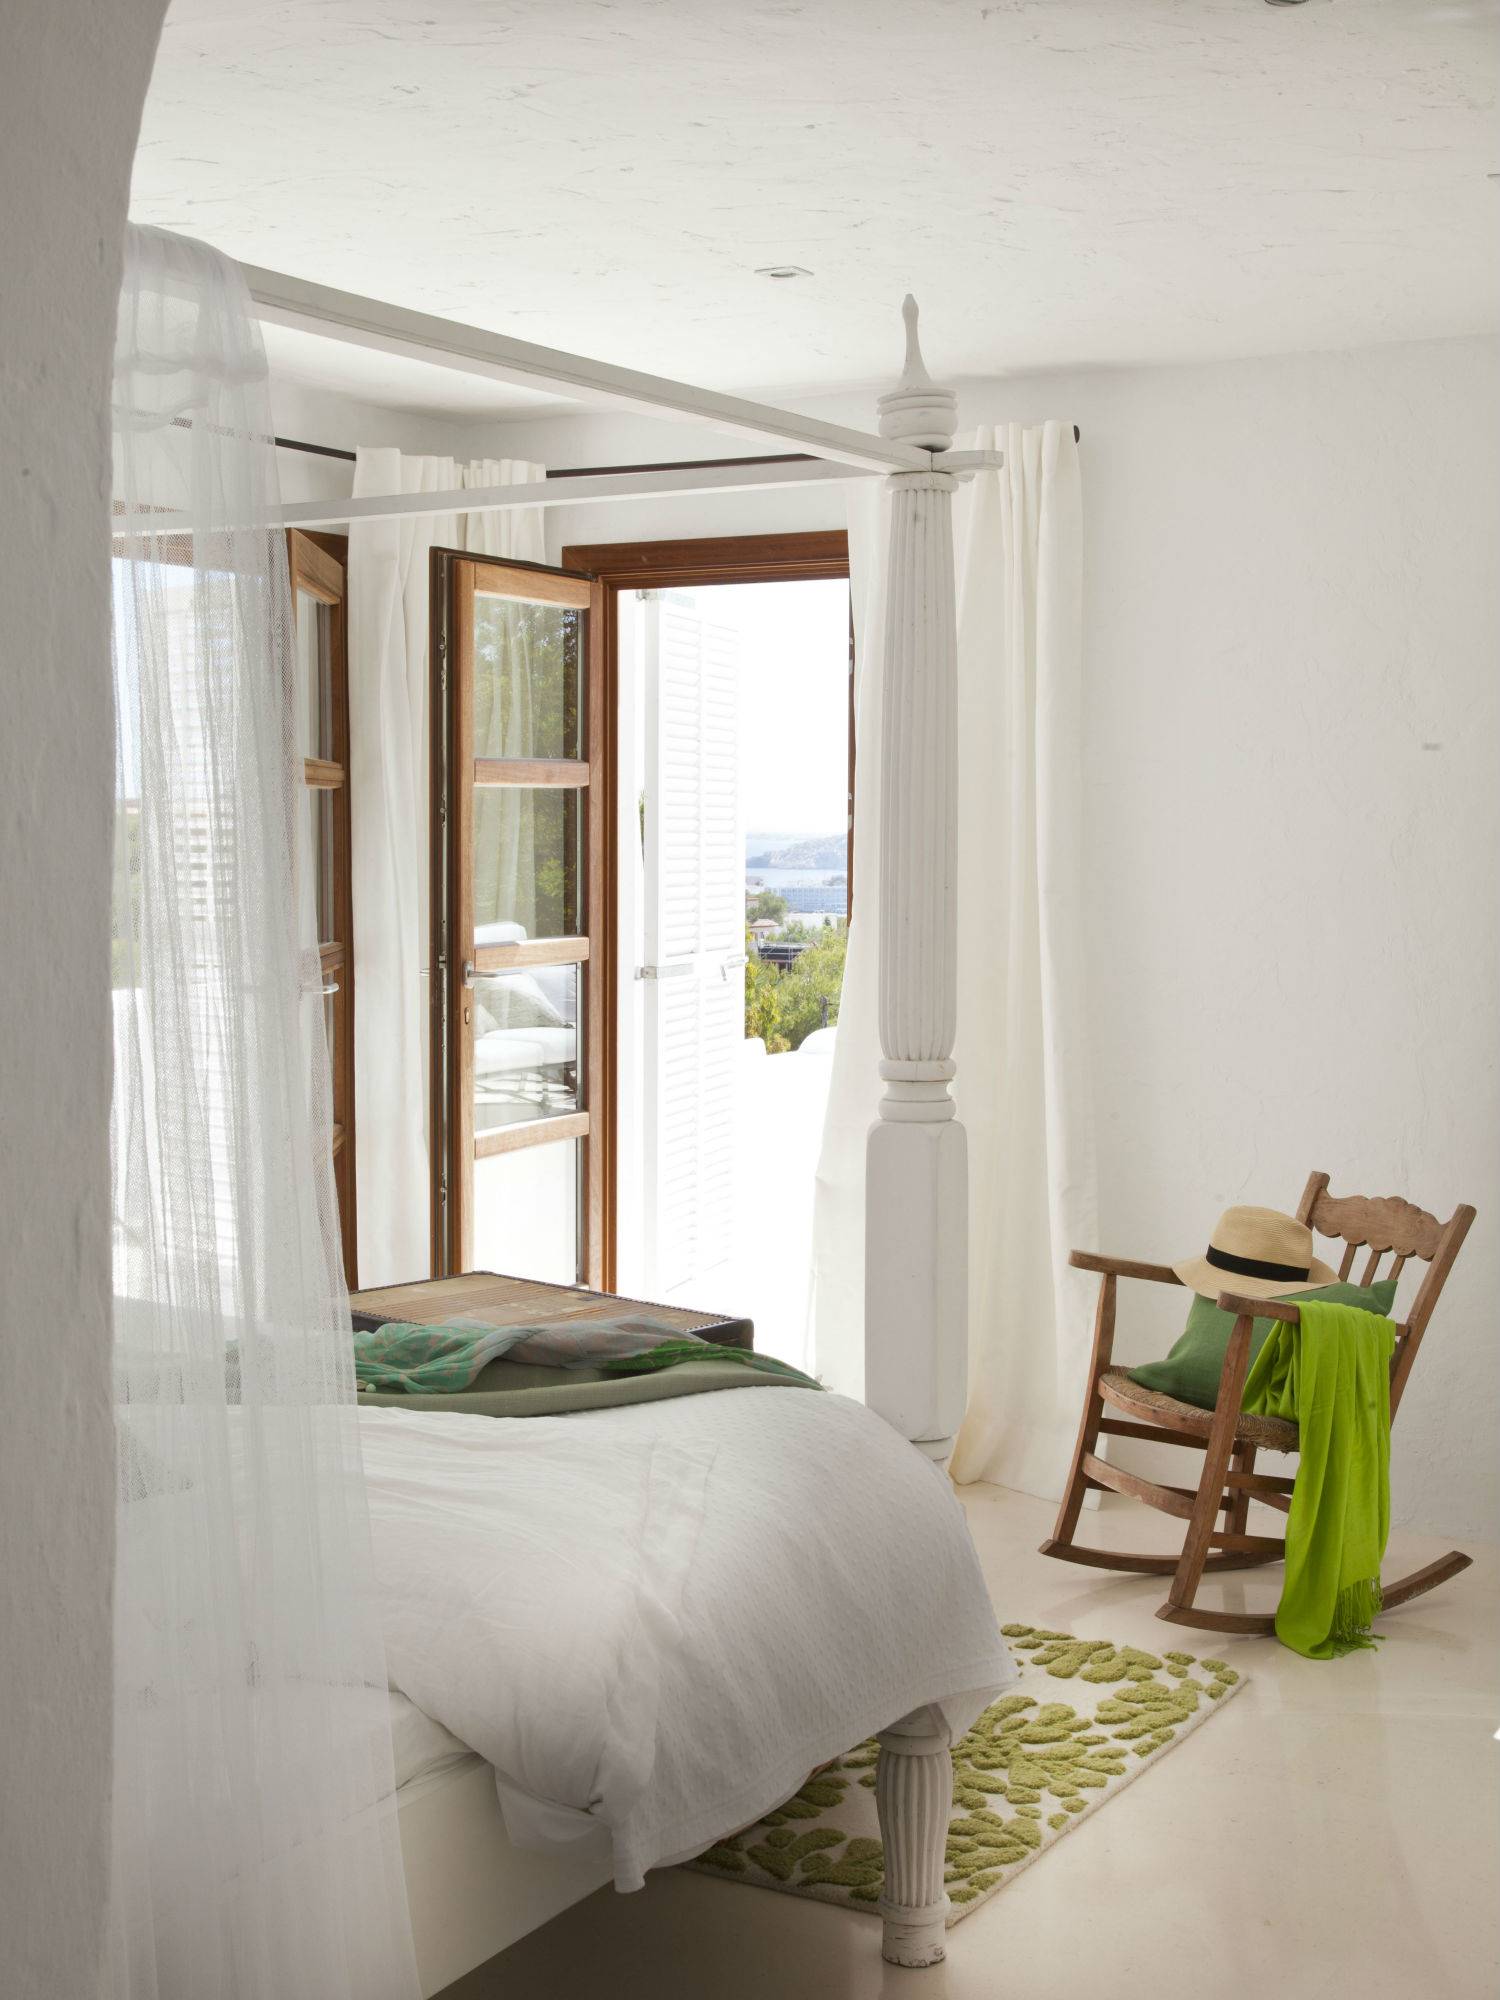 Dormitorio veraniego con cama lacada en blanco, silla mecedora en madera y con vistas al mar.